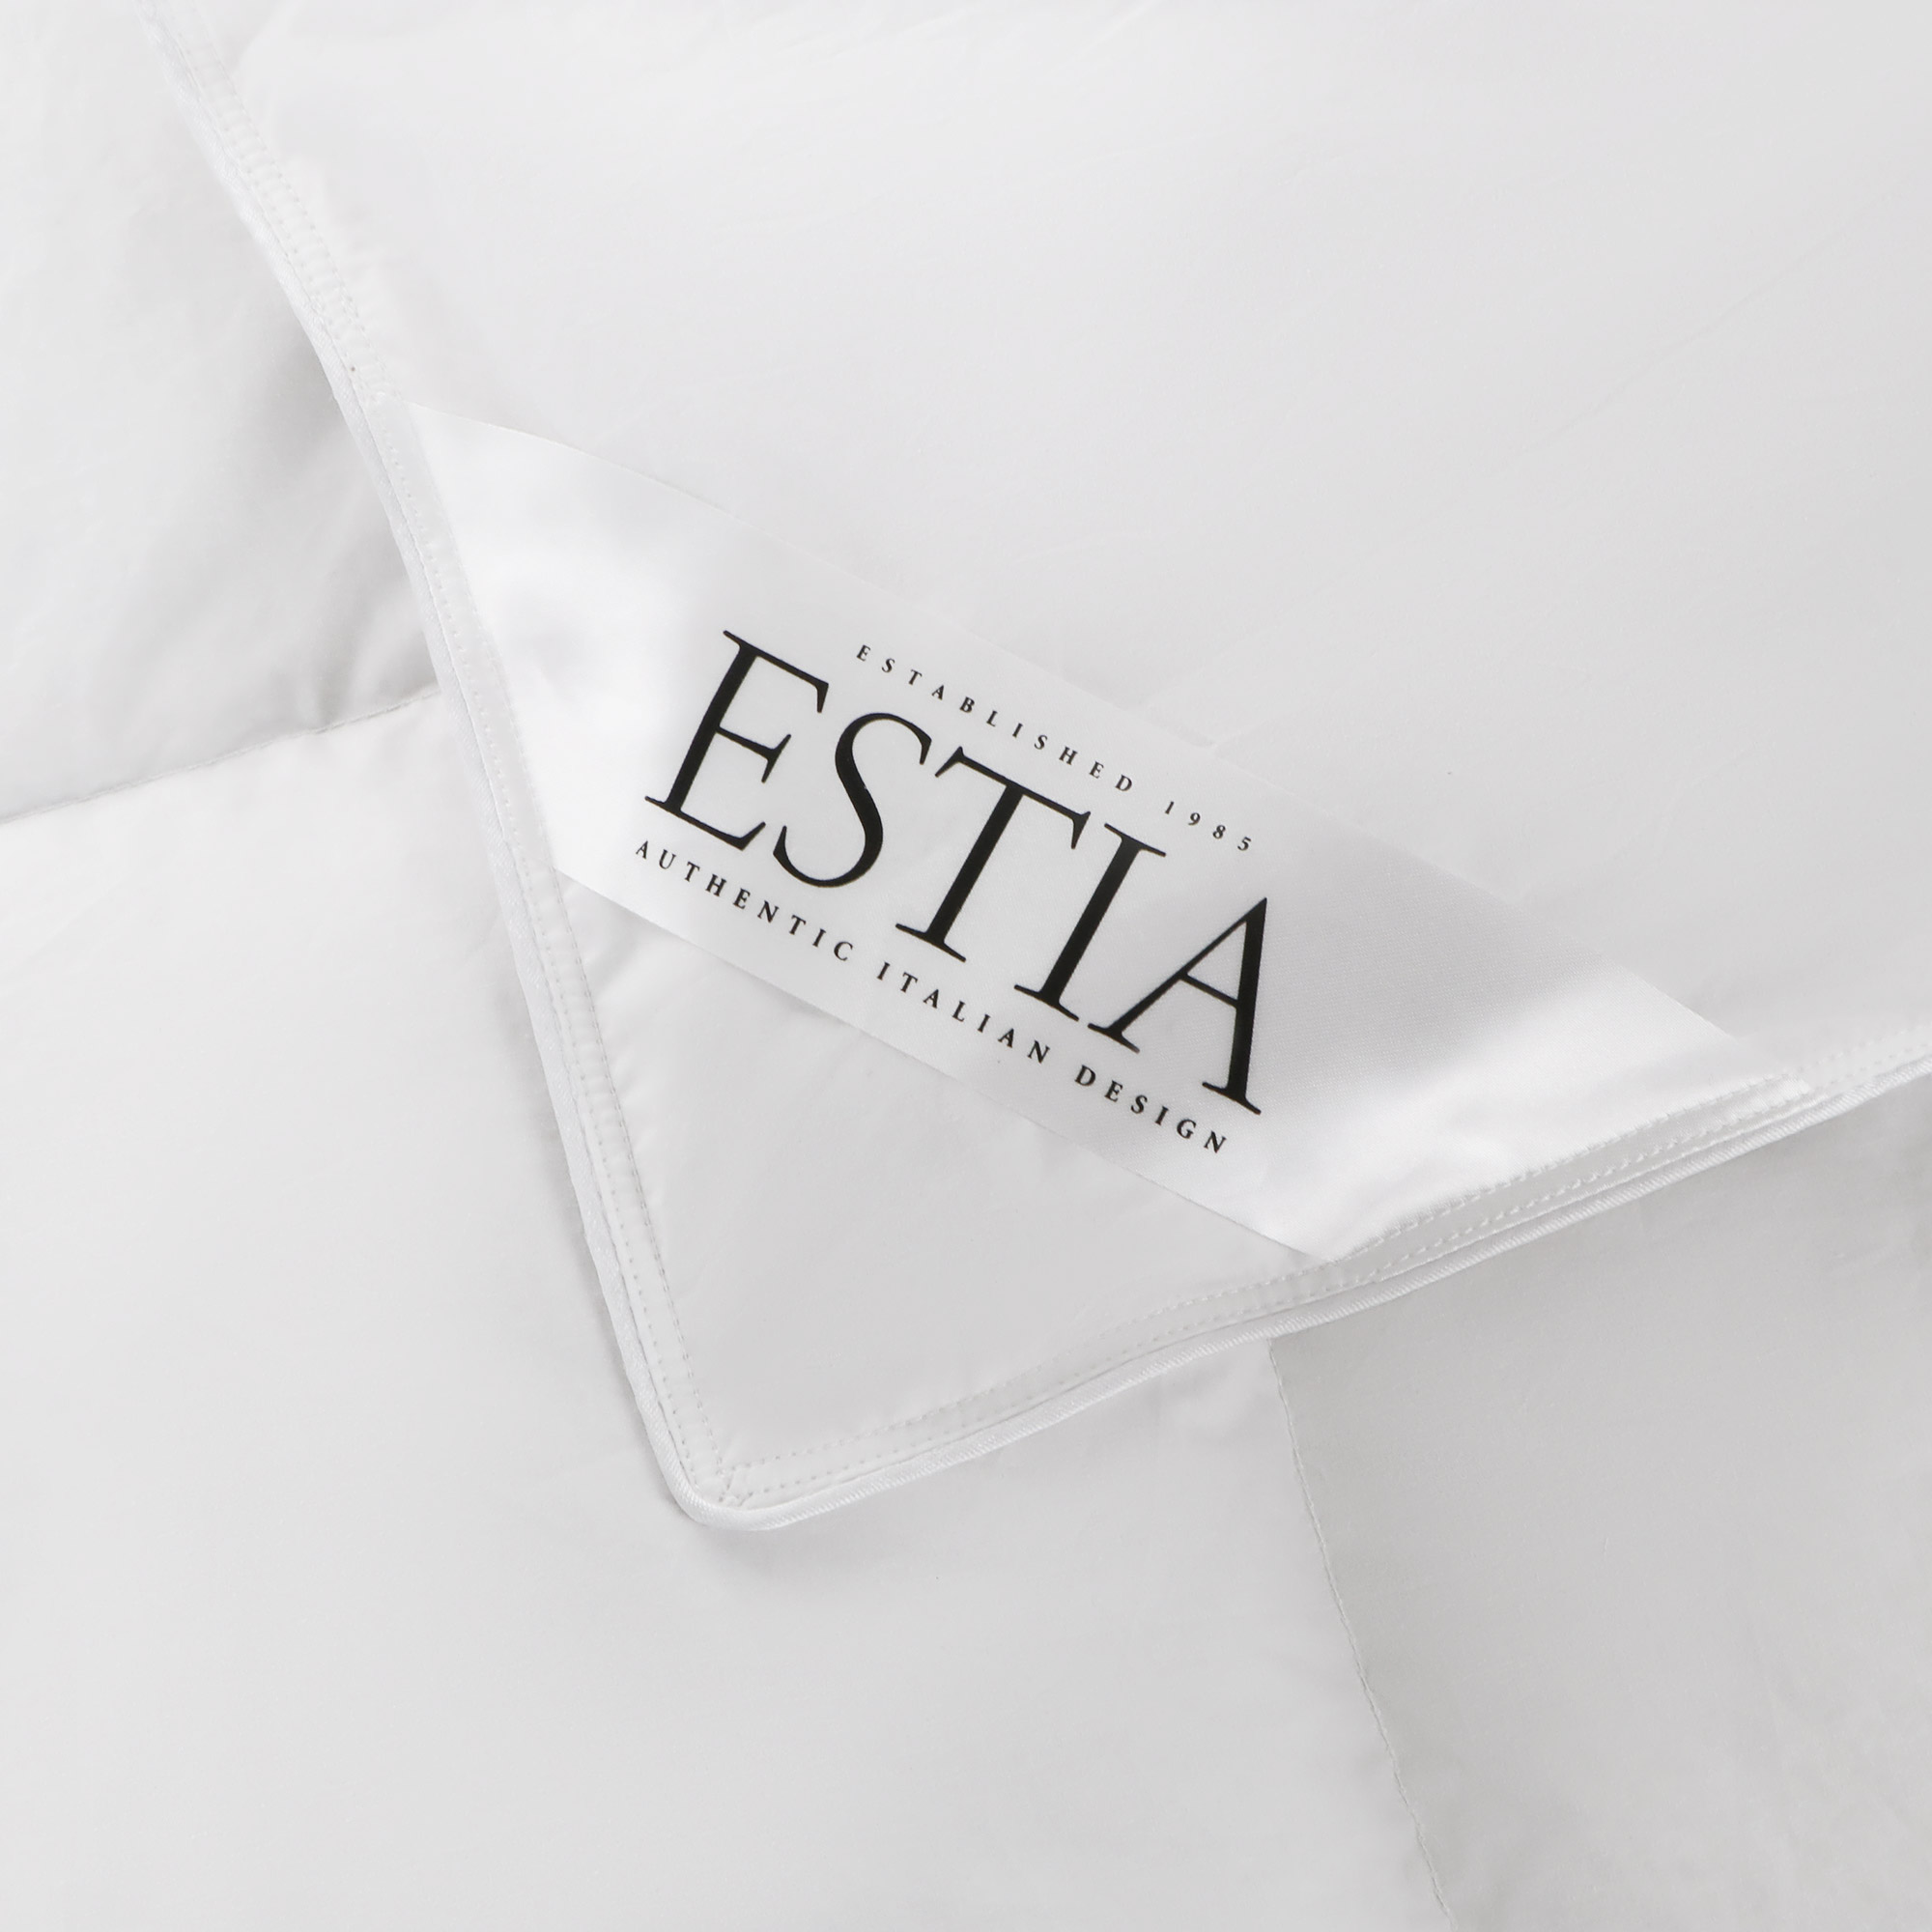 Одеяло Estia Аоста медиум 200х210 см белое, цвет белый, размер 200х210 см - фото 3